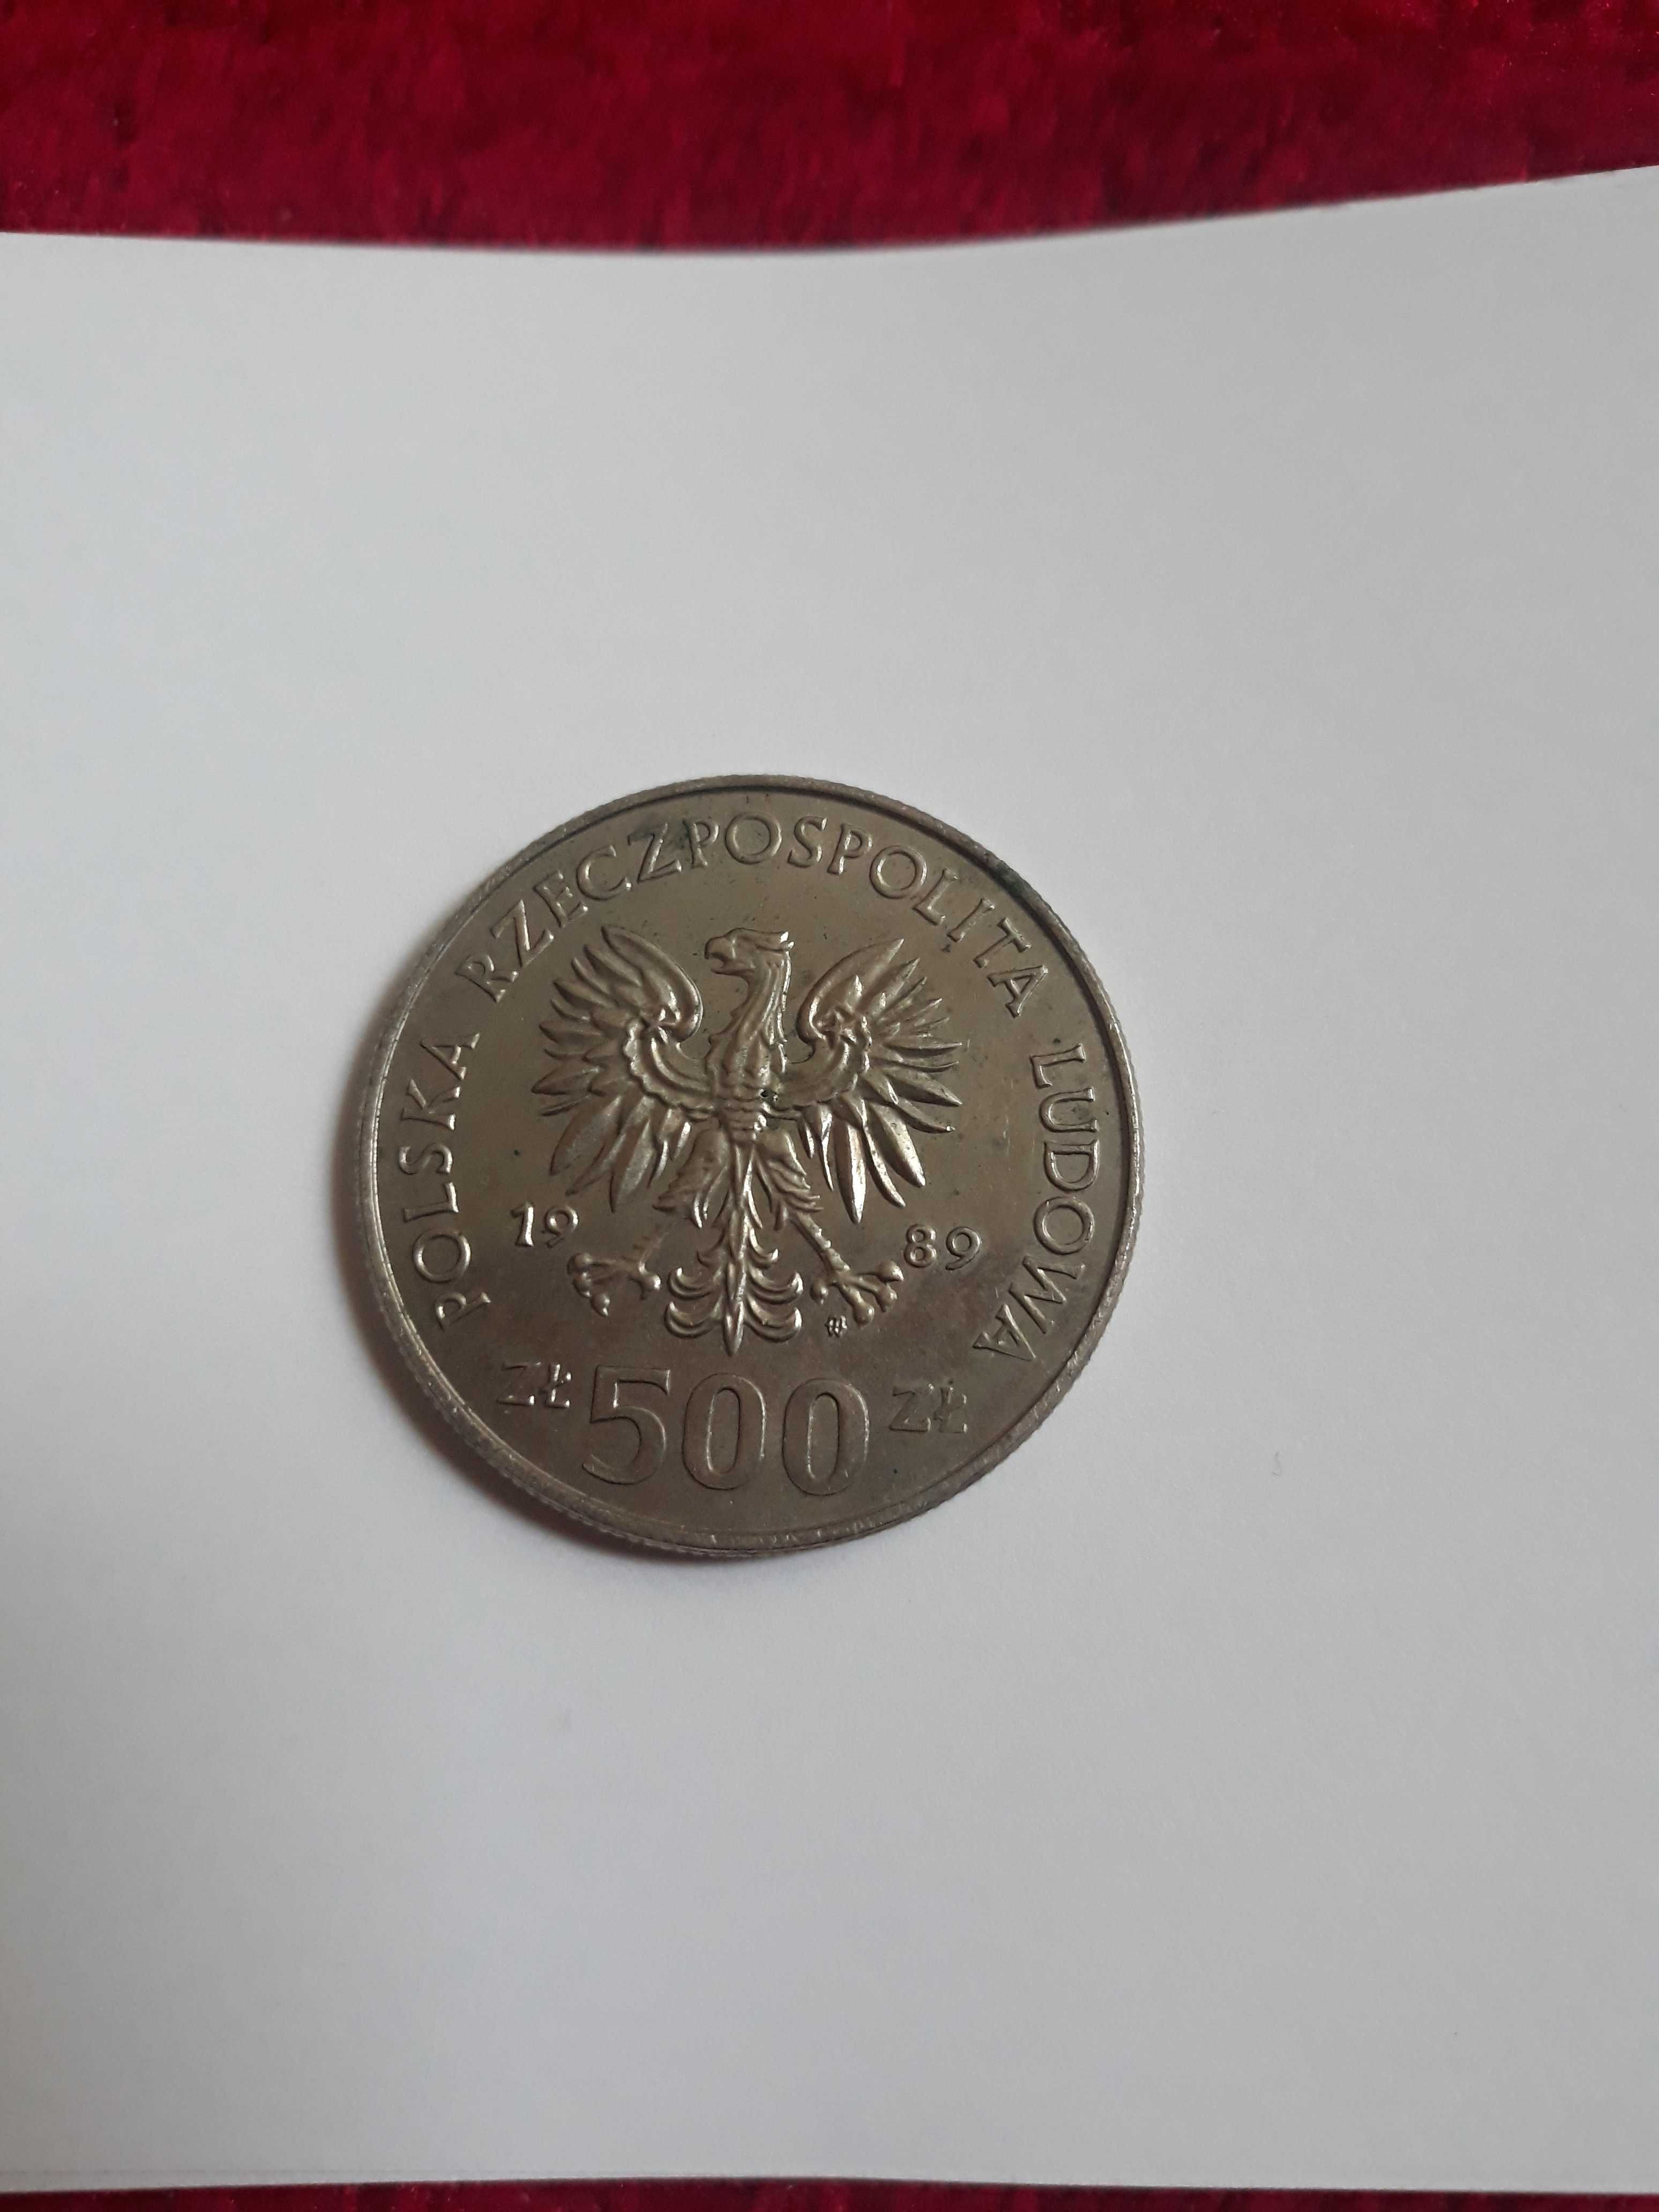 Moneta 500zl z prl